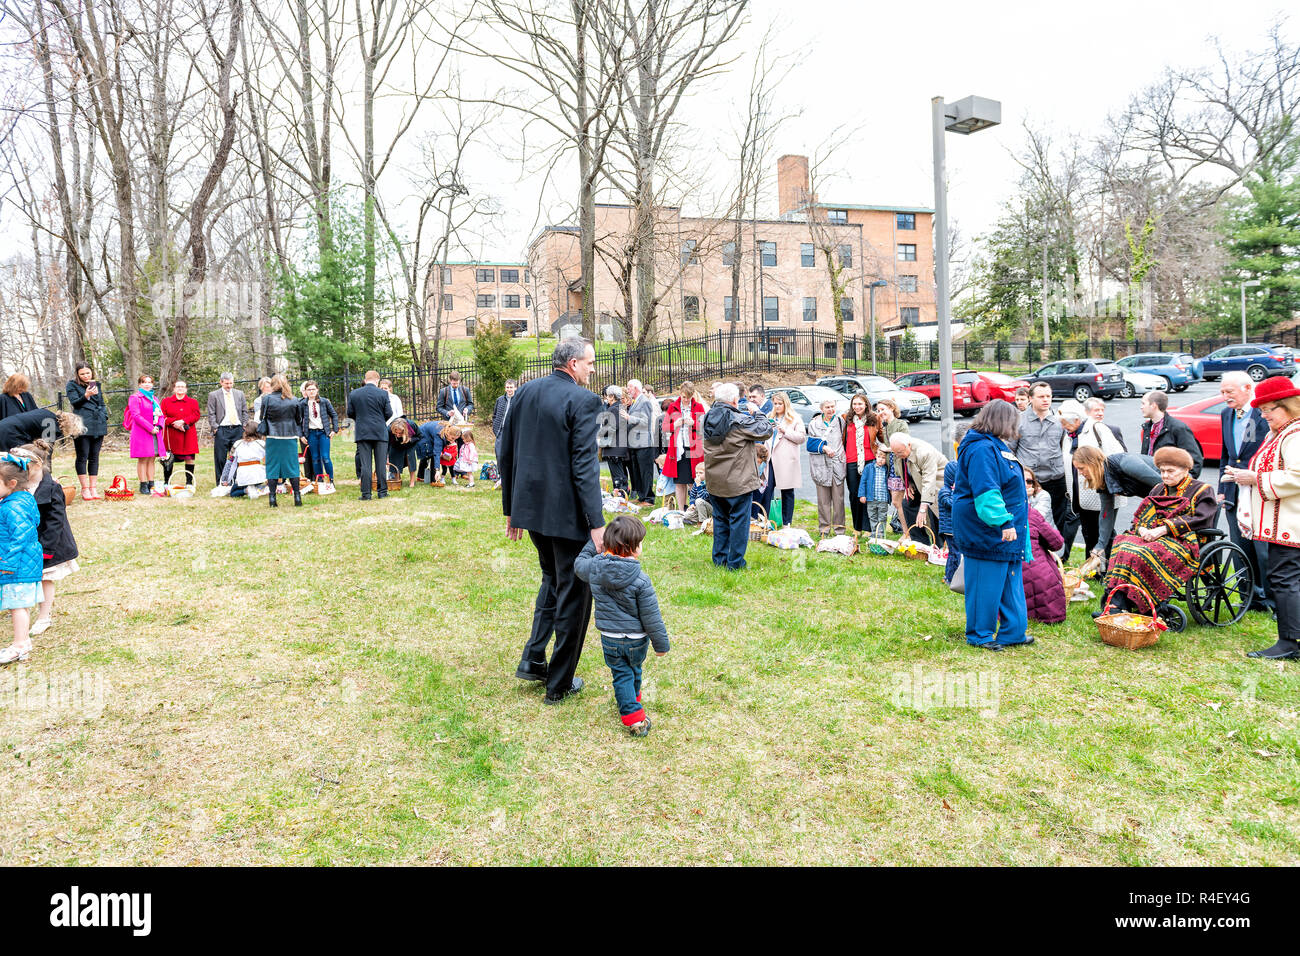 Washington DC, USA - April 1, 2018: Menschen, die Kinder, die in der traditionellen Kleidung draussen, im Freien, Ostern Körbe für Segen auf dem Ukrainischen Catho Stockfoto